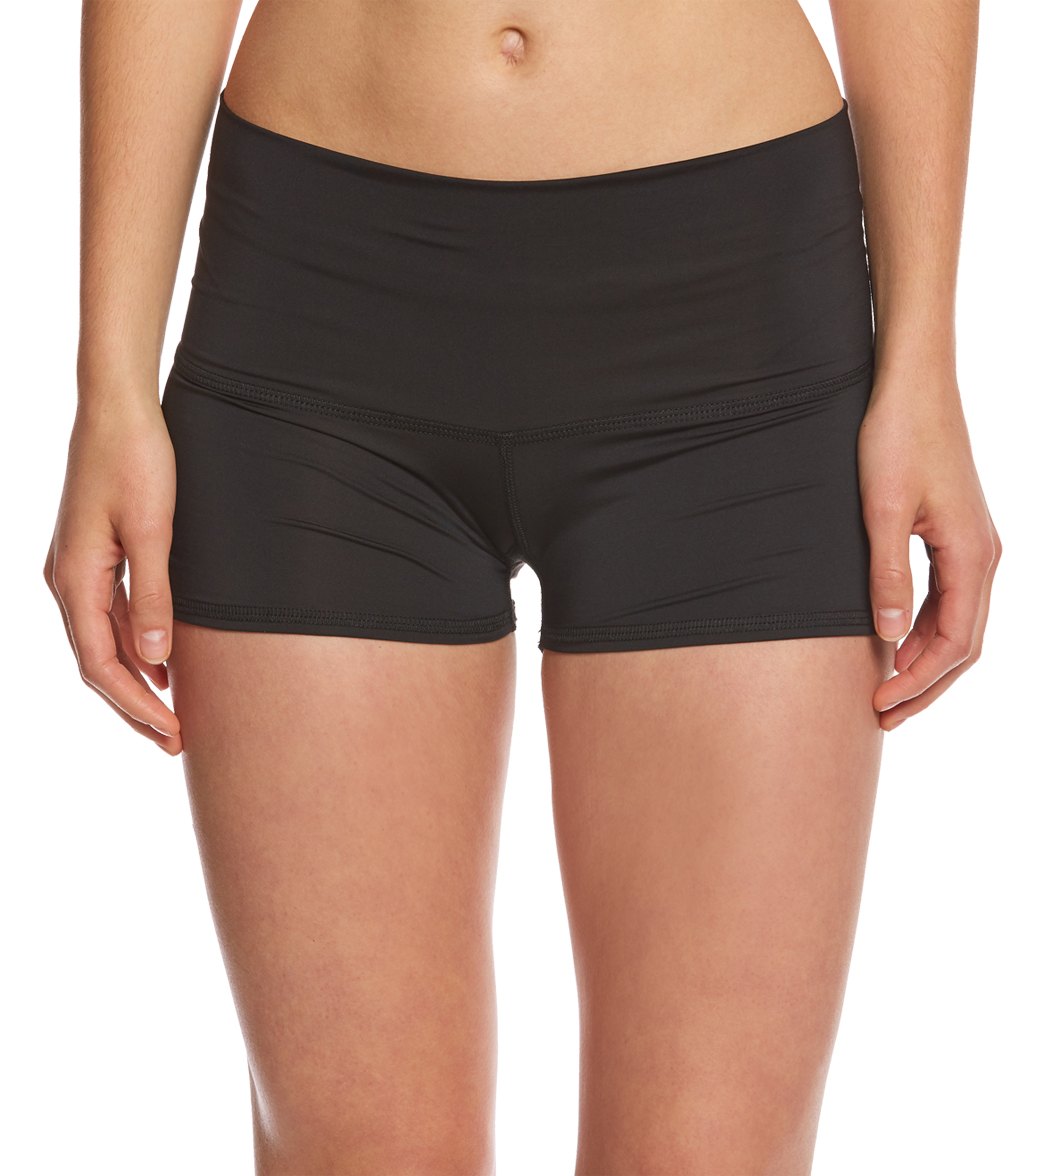 Teeki Jimi Sun Shorts - Small Multi Color Size Small - Swimoutlet.com